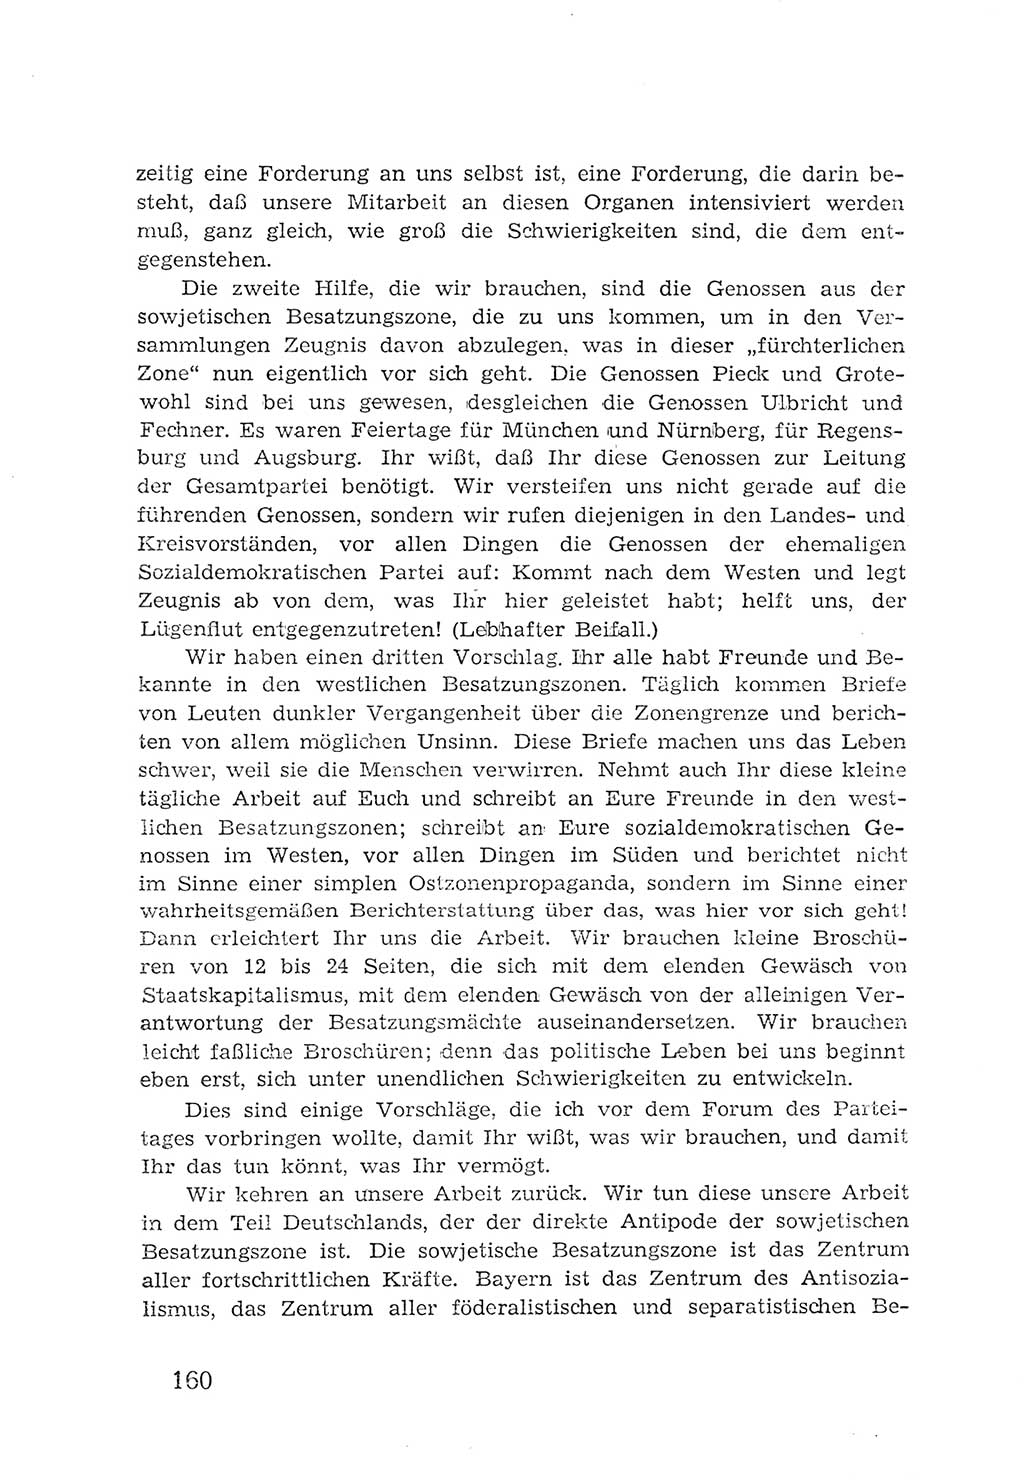 Protokoll der Verhandlungen des 2. Parteitages der Sozialistischen Einheitspartei Deutschlands (SED) [Sowjetische Besatzungszone (SBZ) Deutschlands] 1947, Seite 160 (Prot. Verh. 2. PT SED SBZ Dtl. 1947, S. 160)